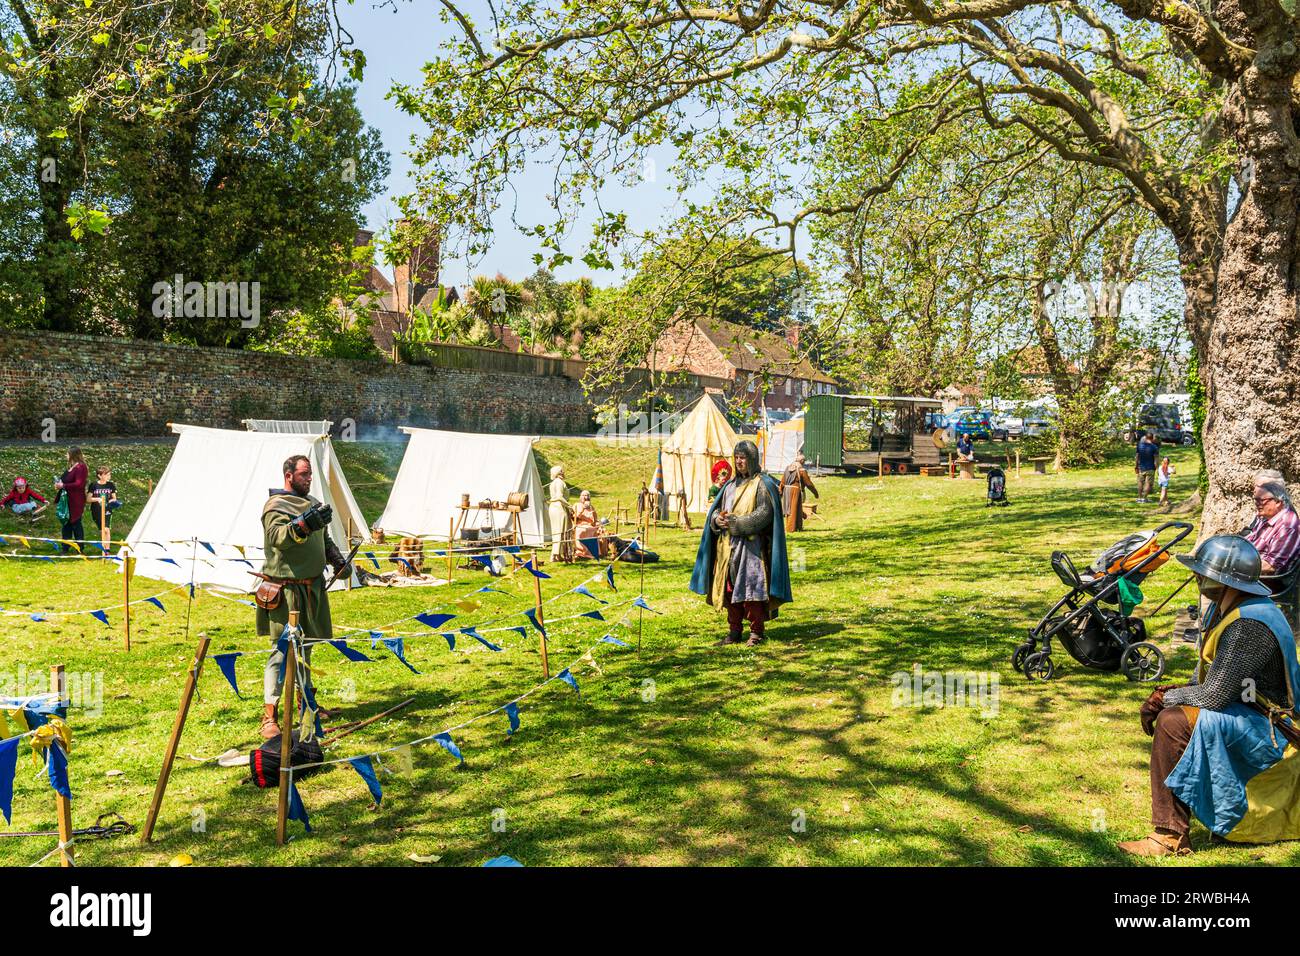 Campement médiéval vivant sur la rive de la rivière Green dans la ville de Sandwich dans le Kent. Tentes blanches et colorées dressées parmi les arbres au soleil. Banque D'Images